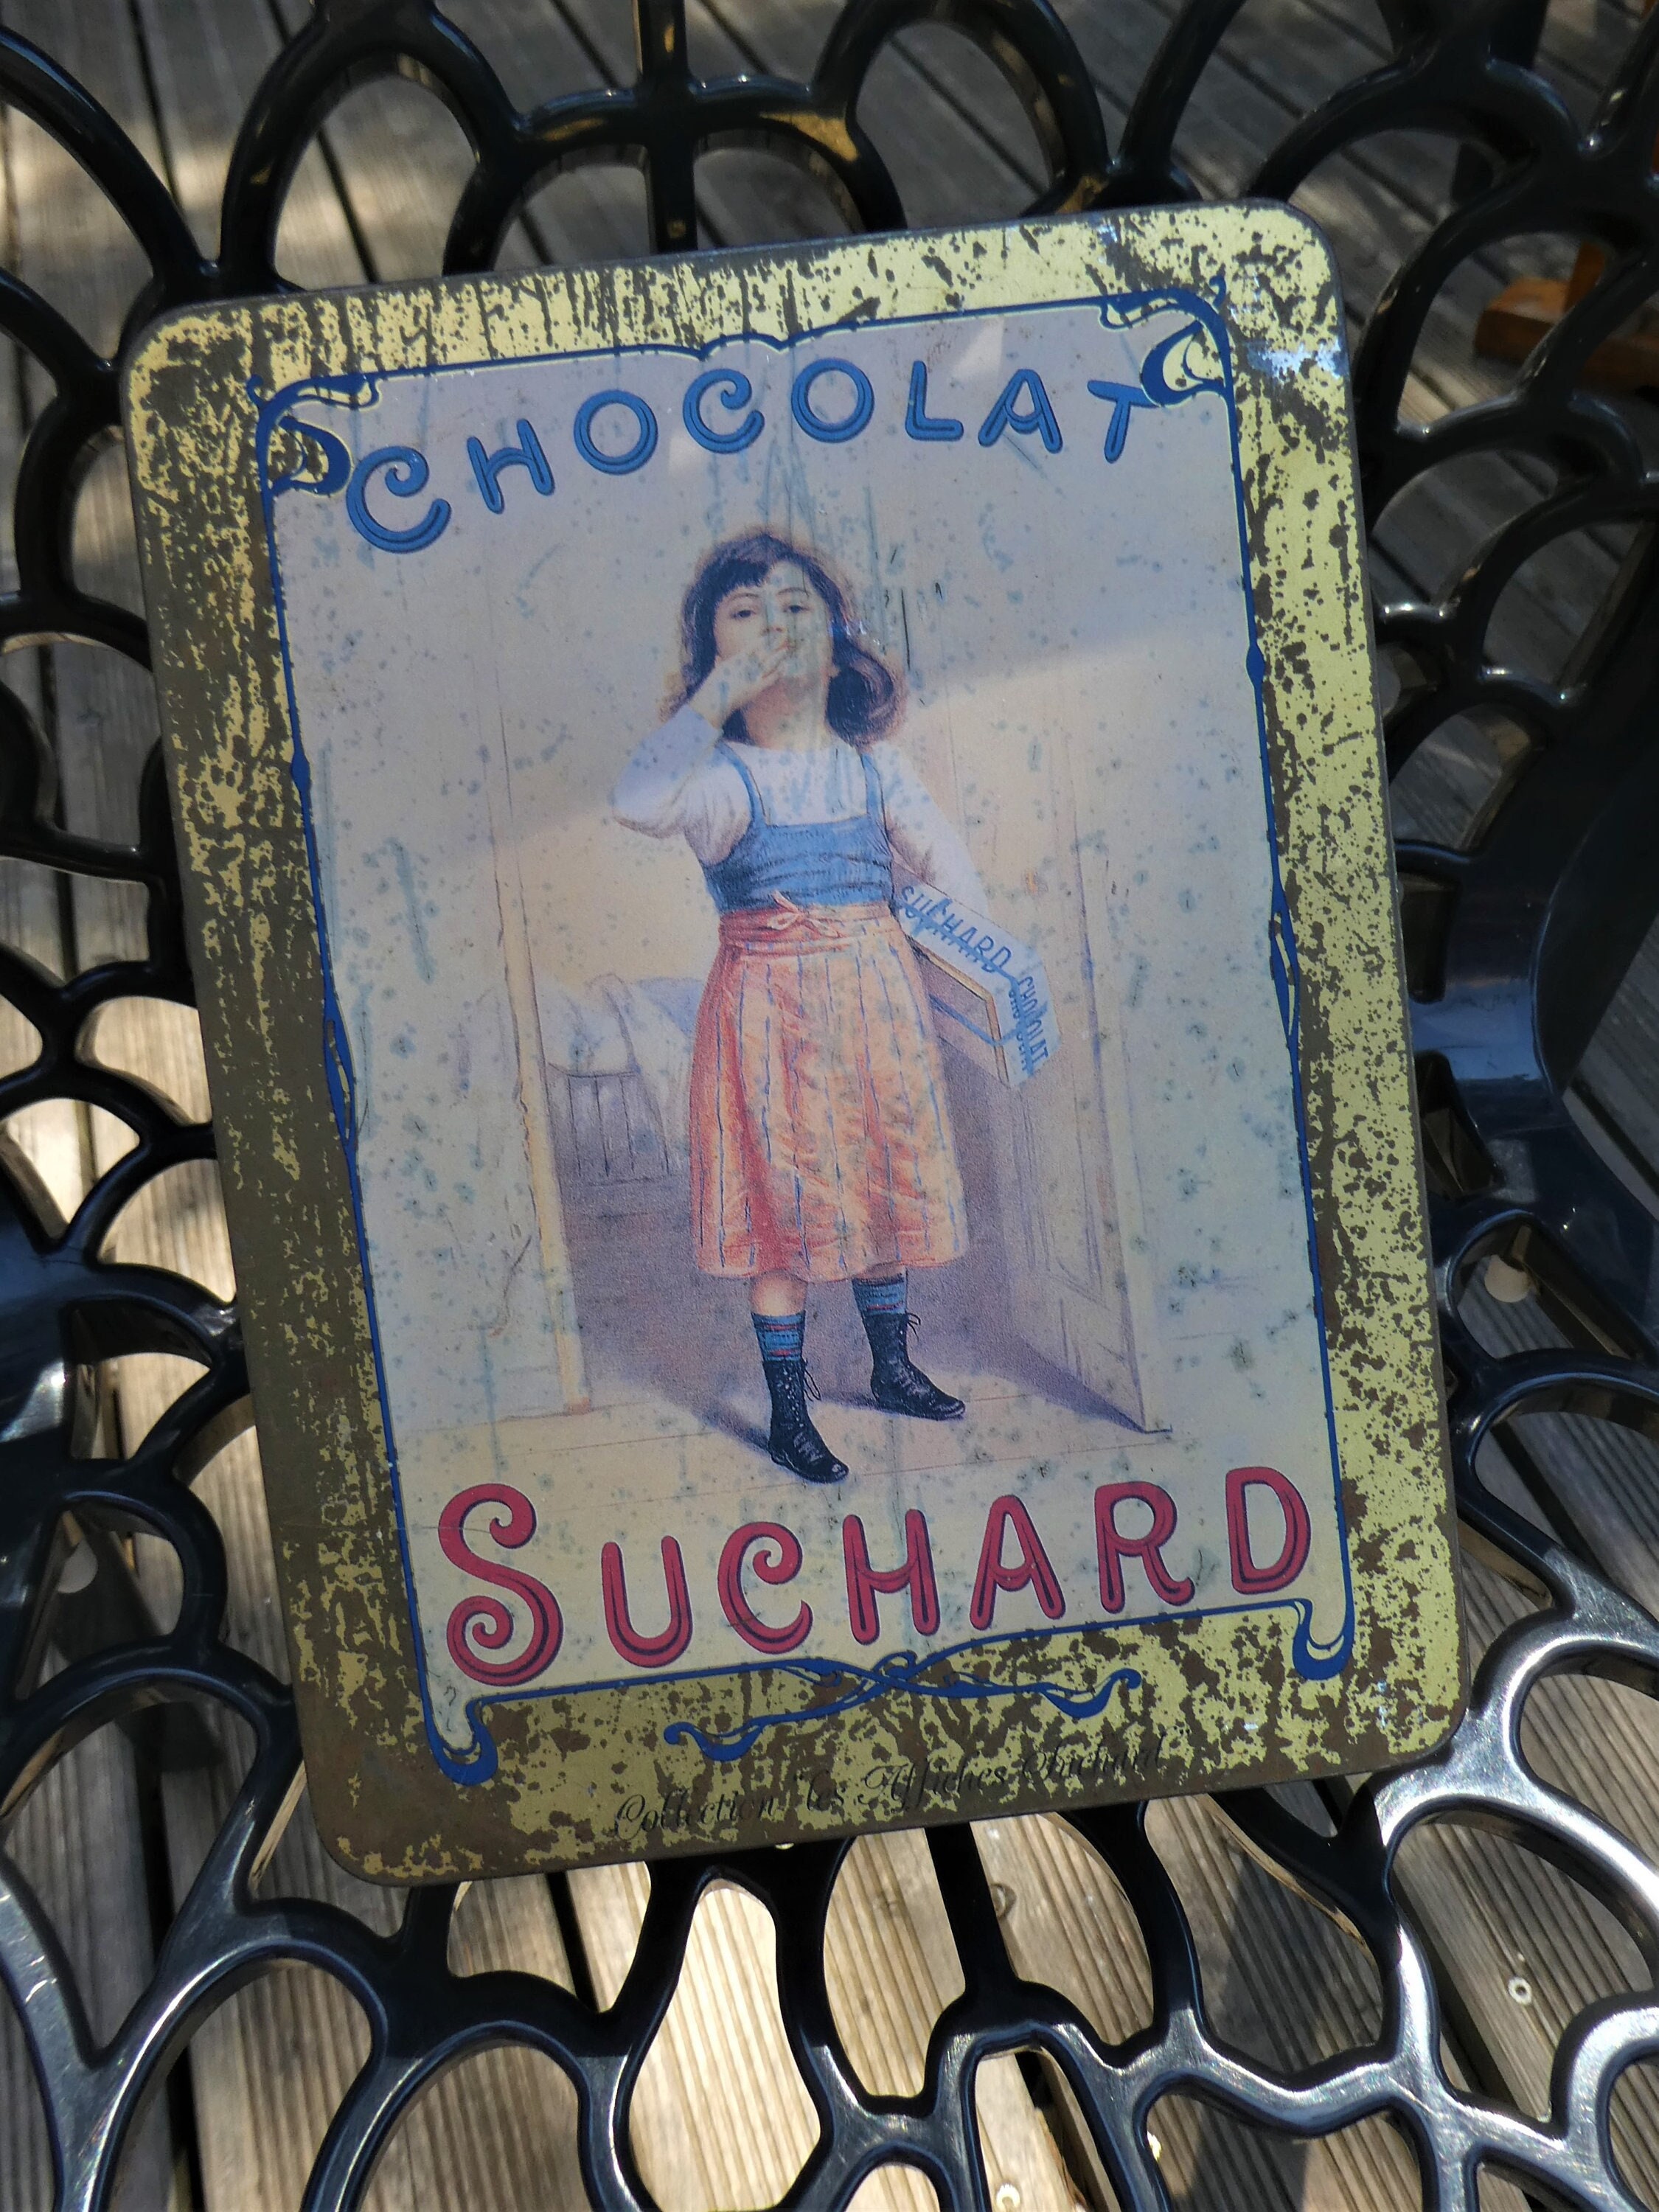 Chocolat Suchard Plaque émaillée 